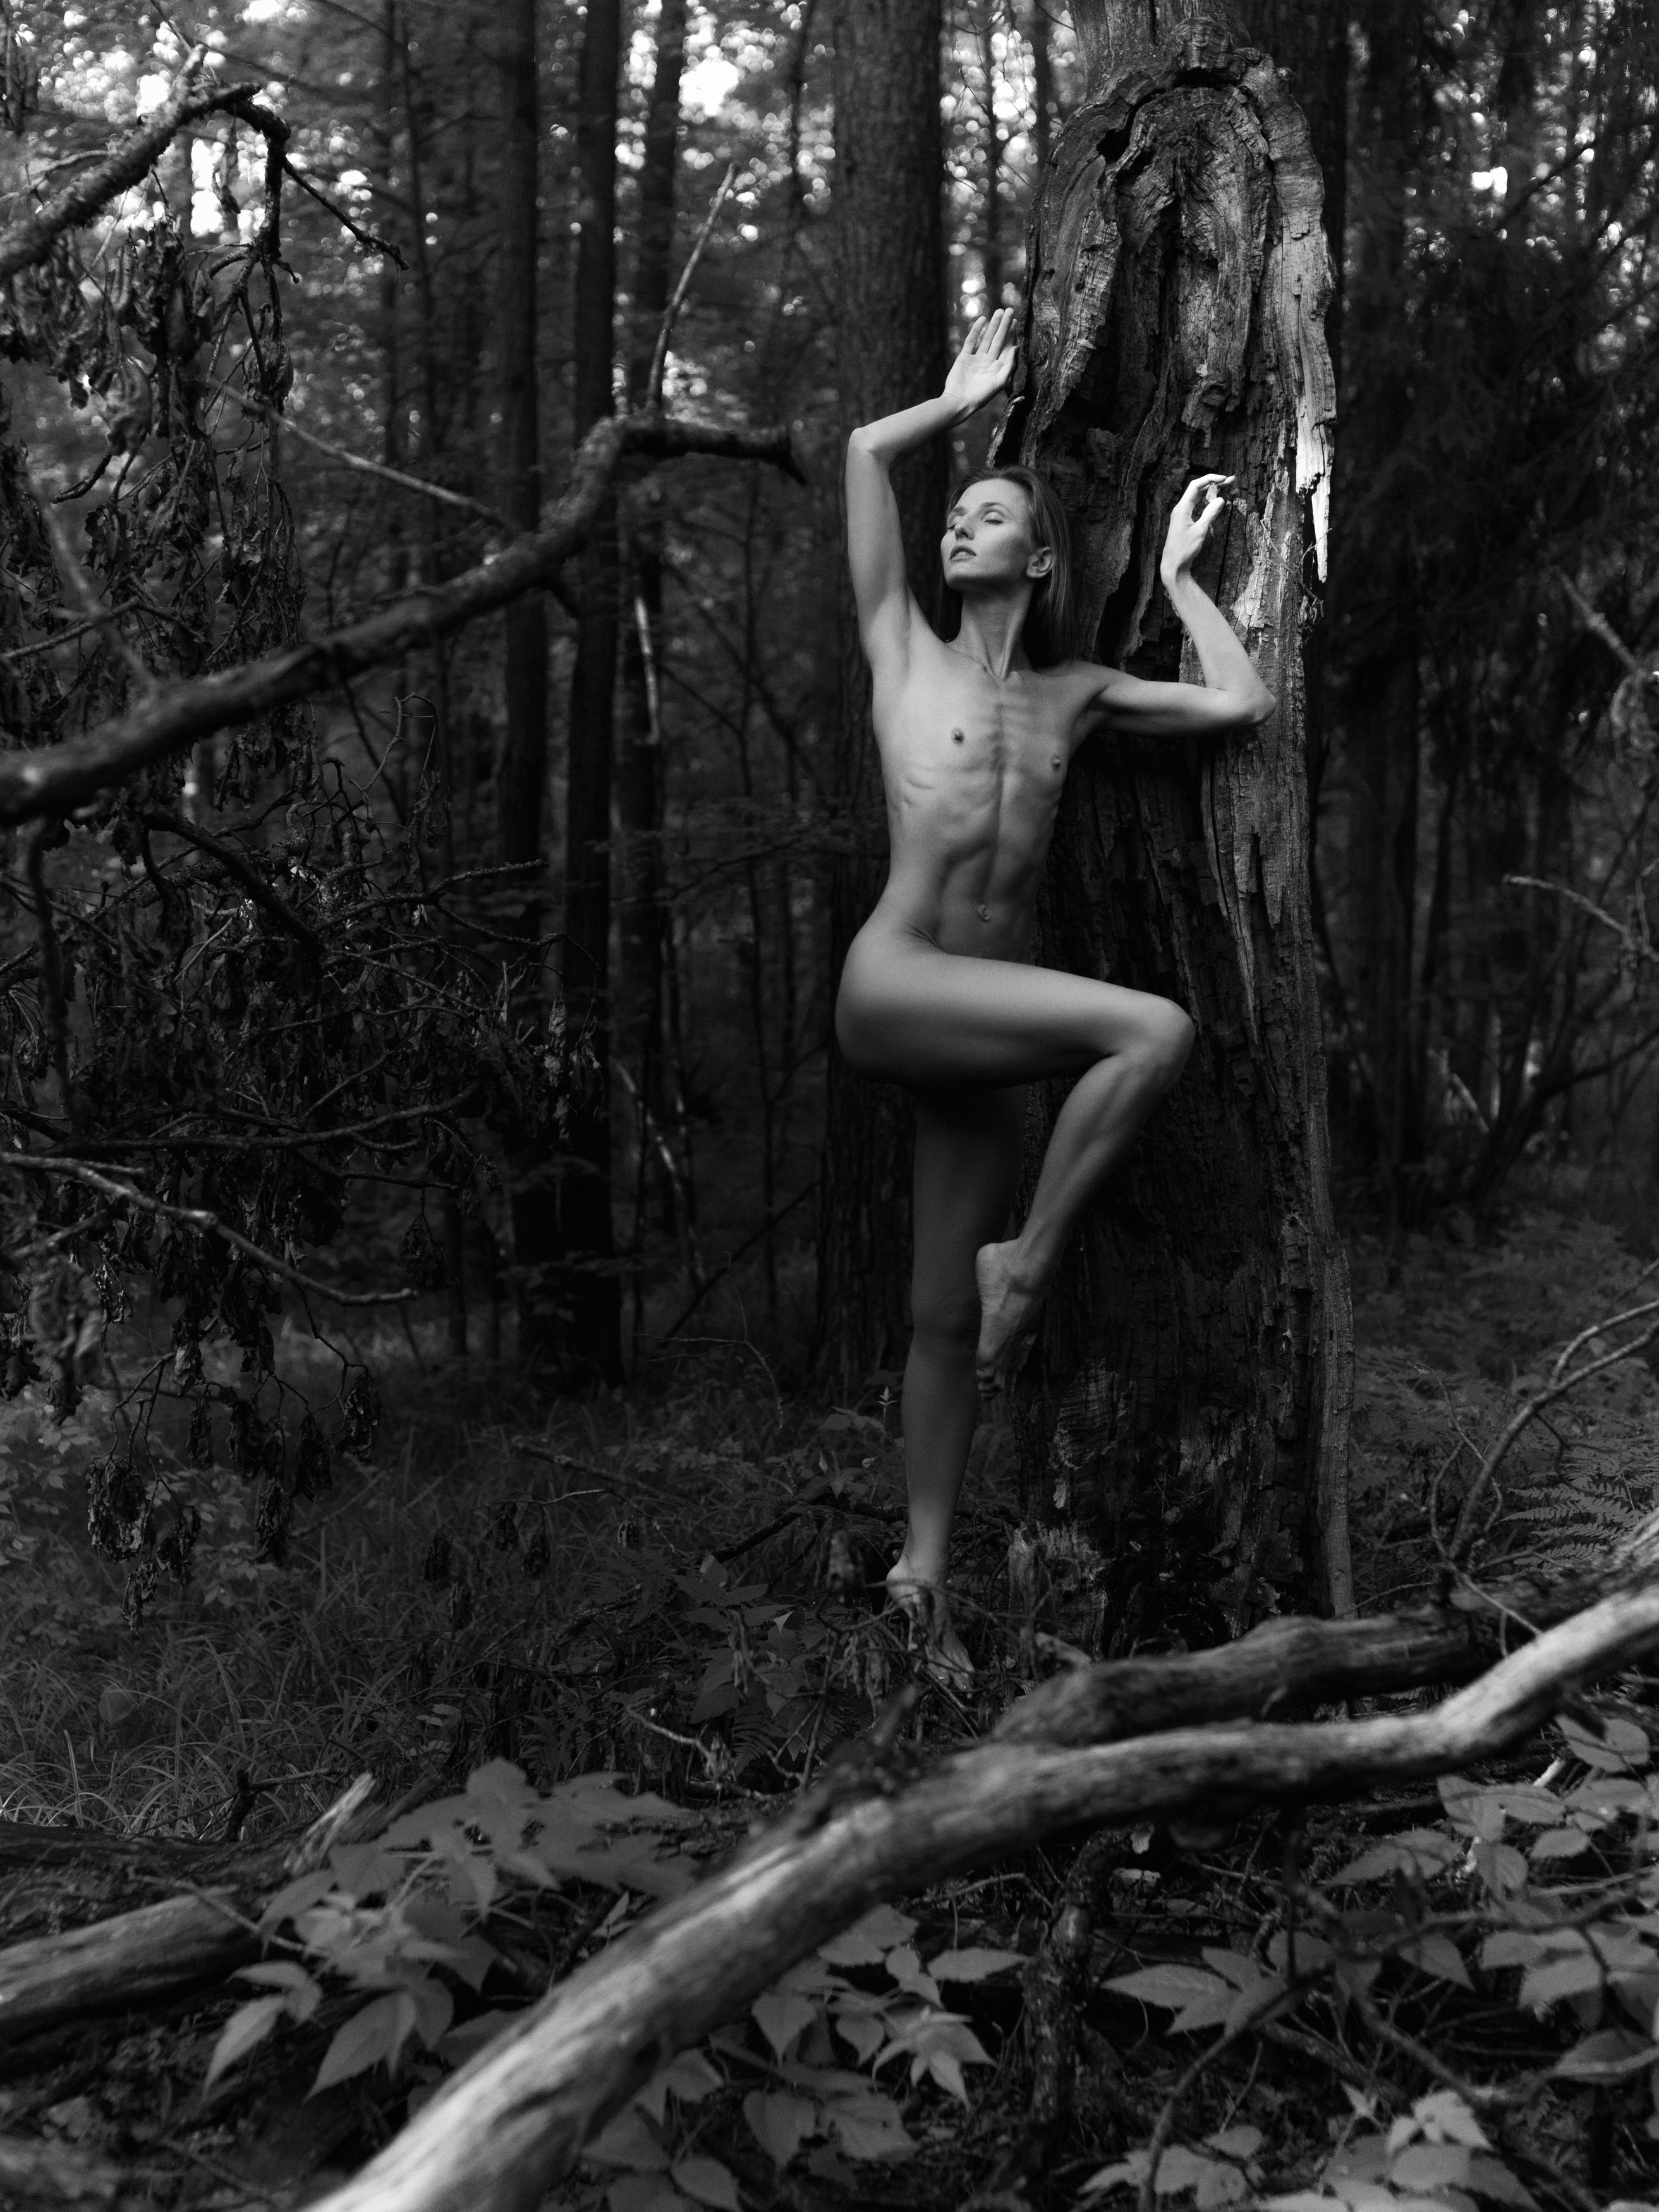 чб обнаженная девушка дуб лес природа красота рассвет, Андрей Репин